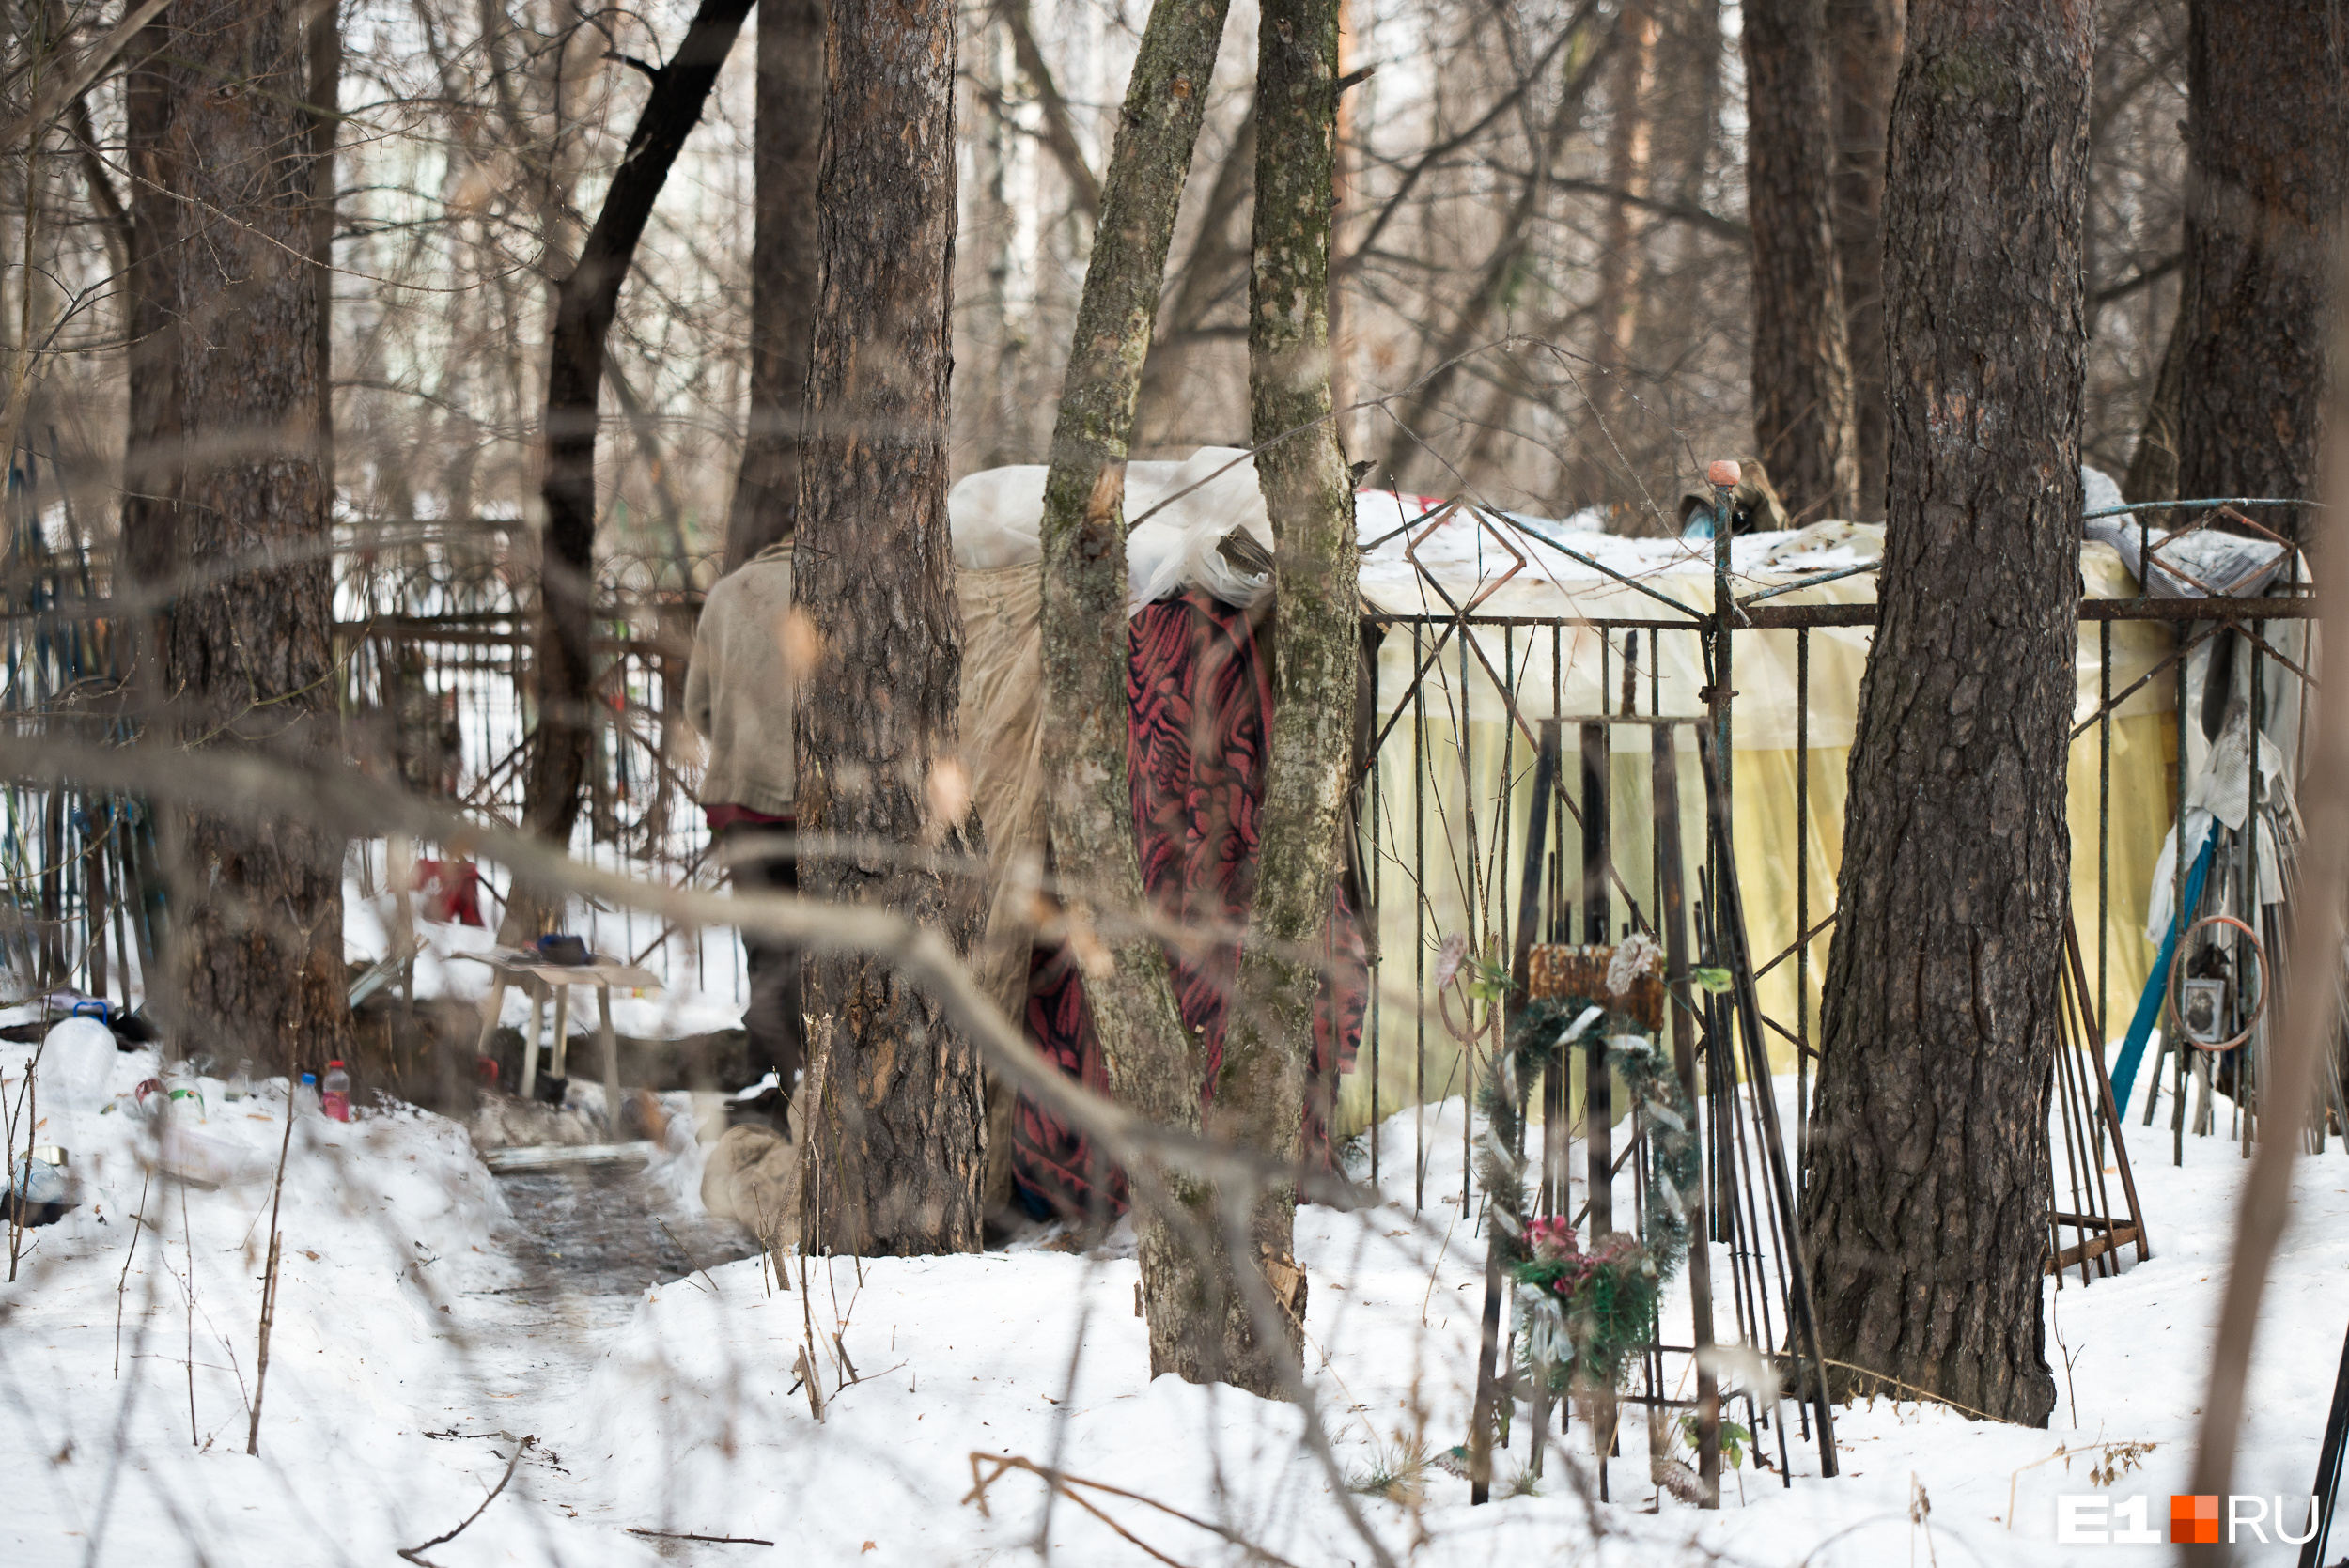 За могилами виднеется домик. По словам Татьяны Мосуновой, на этом кладбище часто живут бомжи